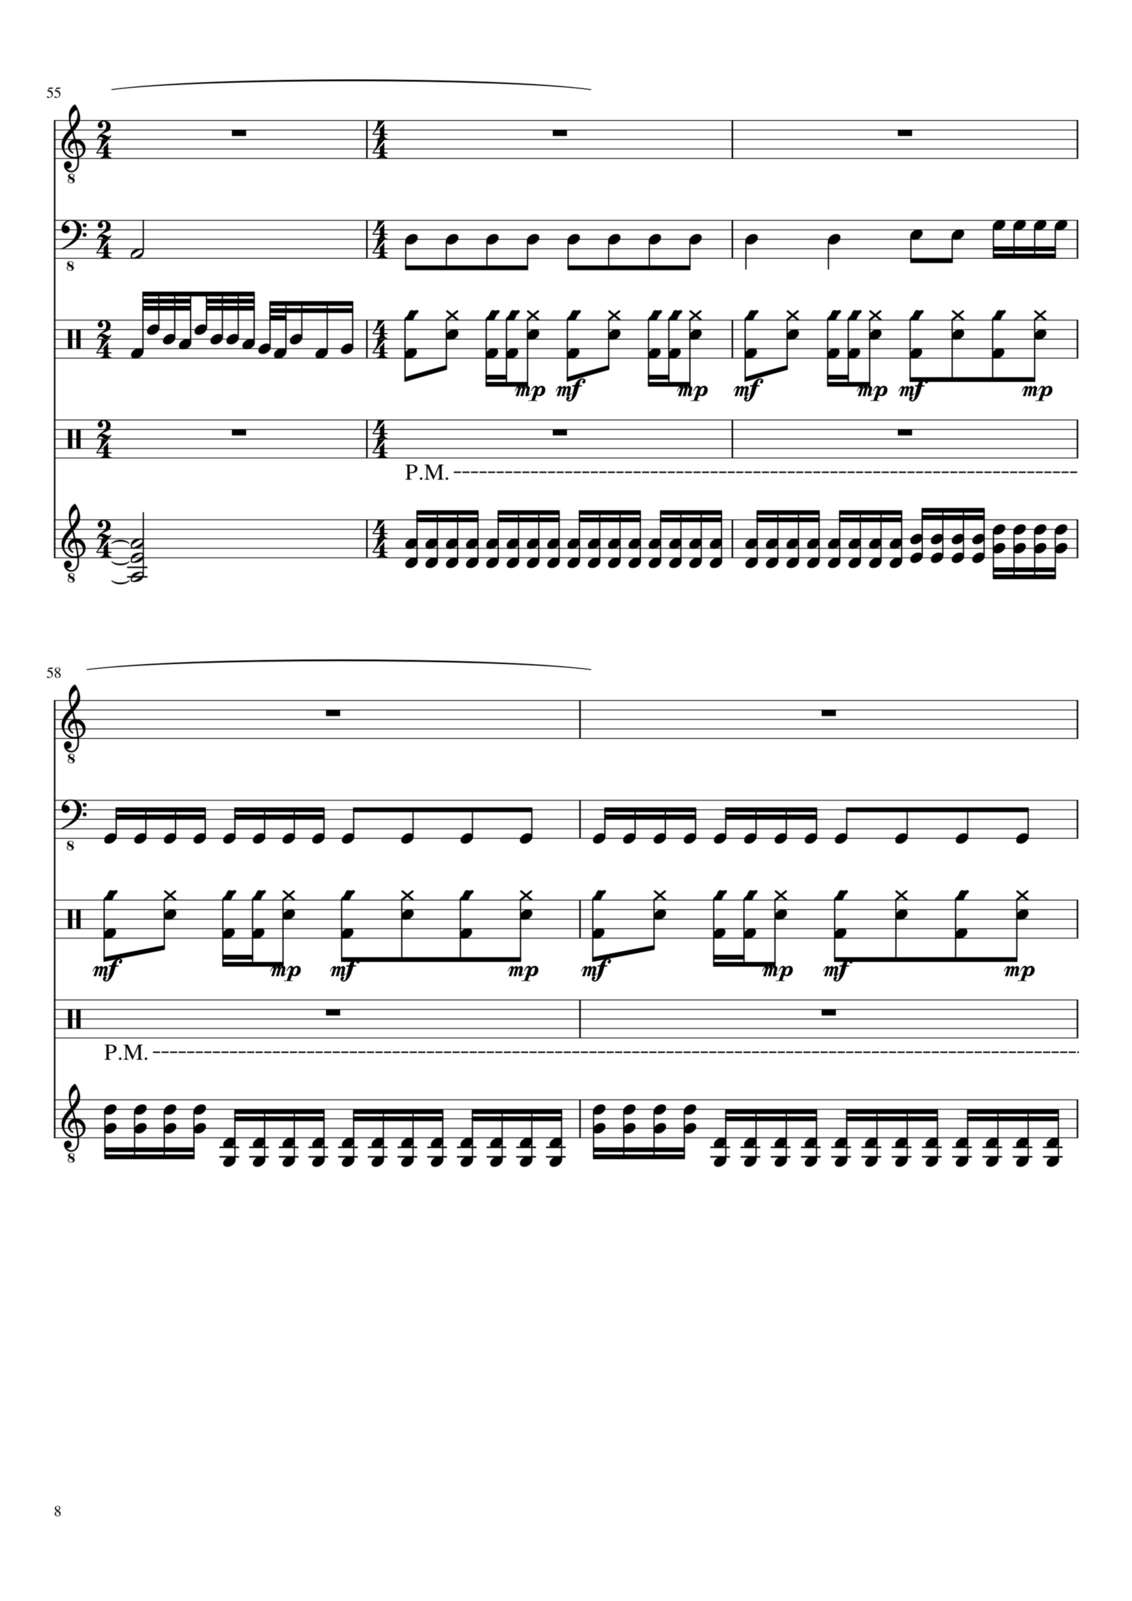 Zvezdnyiy vodoem slide, Image 8